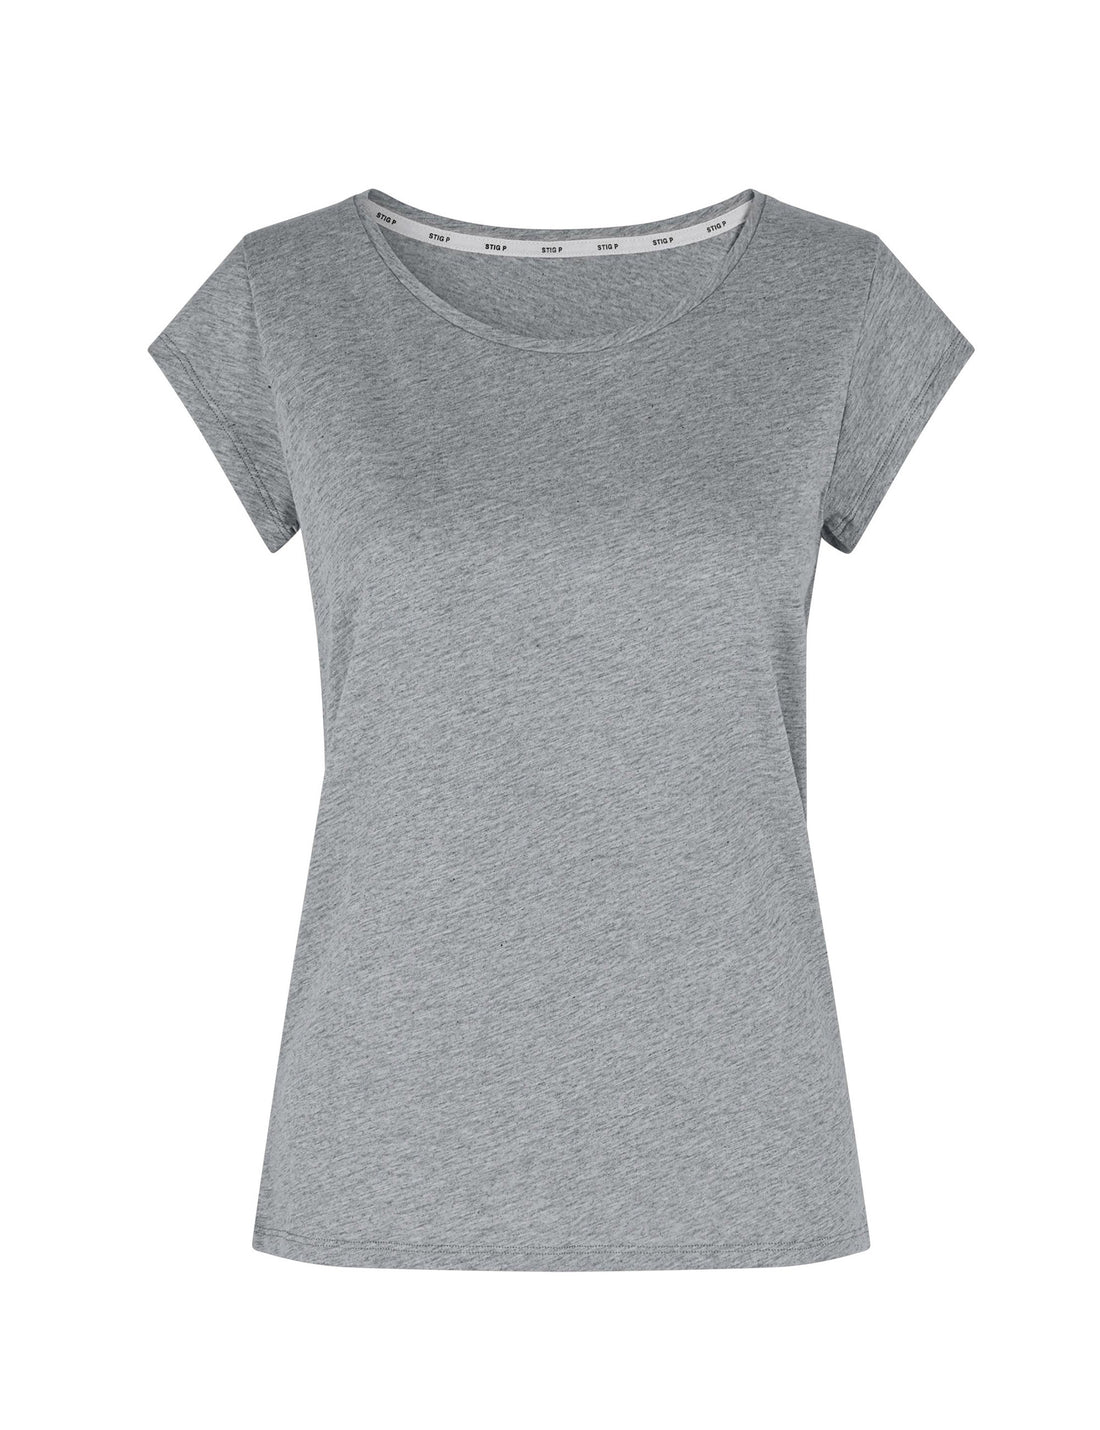 Liu short sleeve t-shirt grey melange